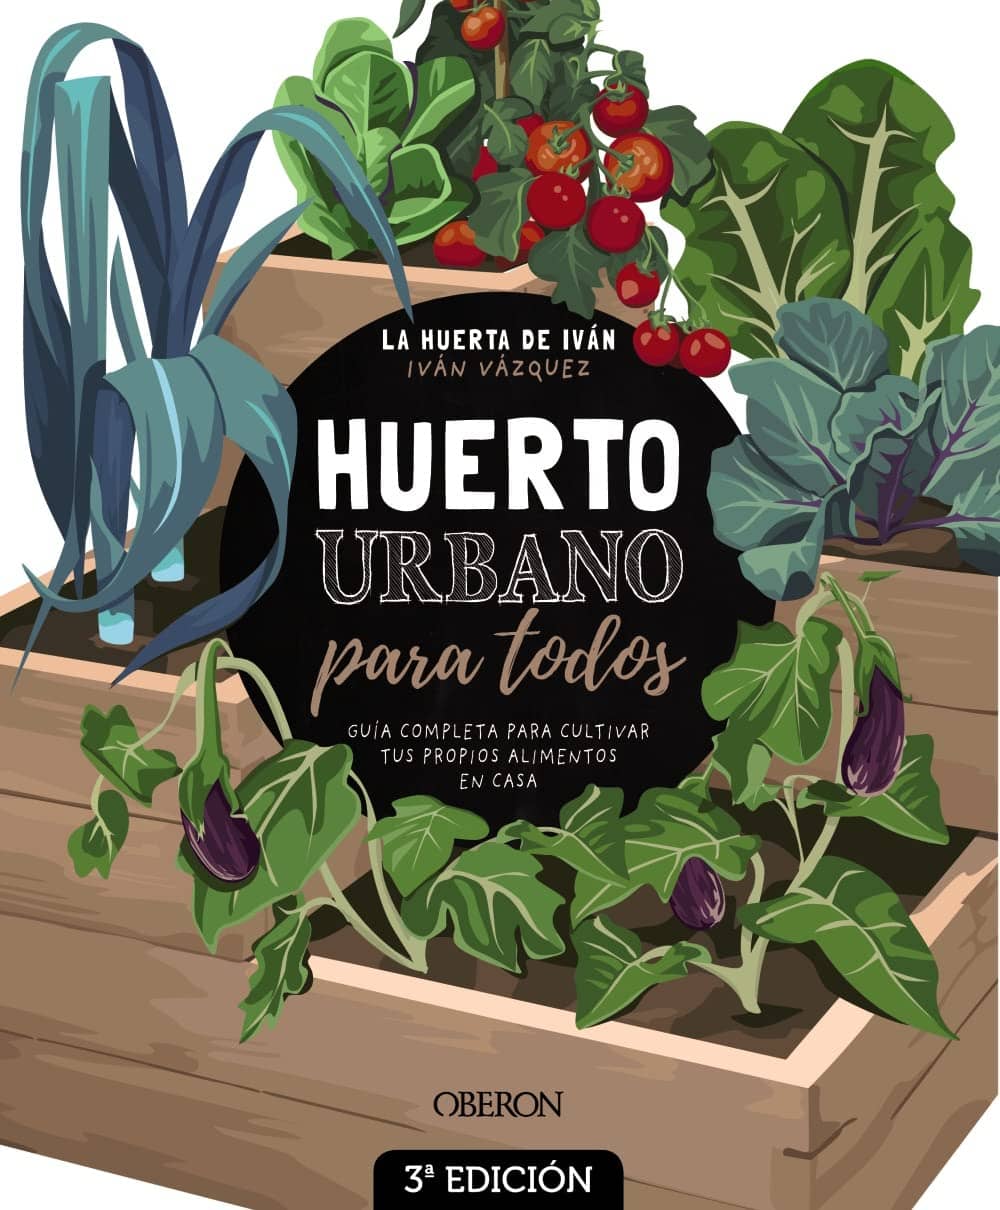 Guía completa para crear y mantener huertas caseras urbanas: ¡cultiva tus propios alimentos en la ciudad!